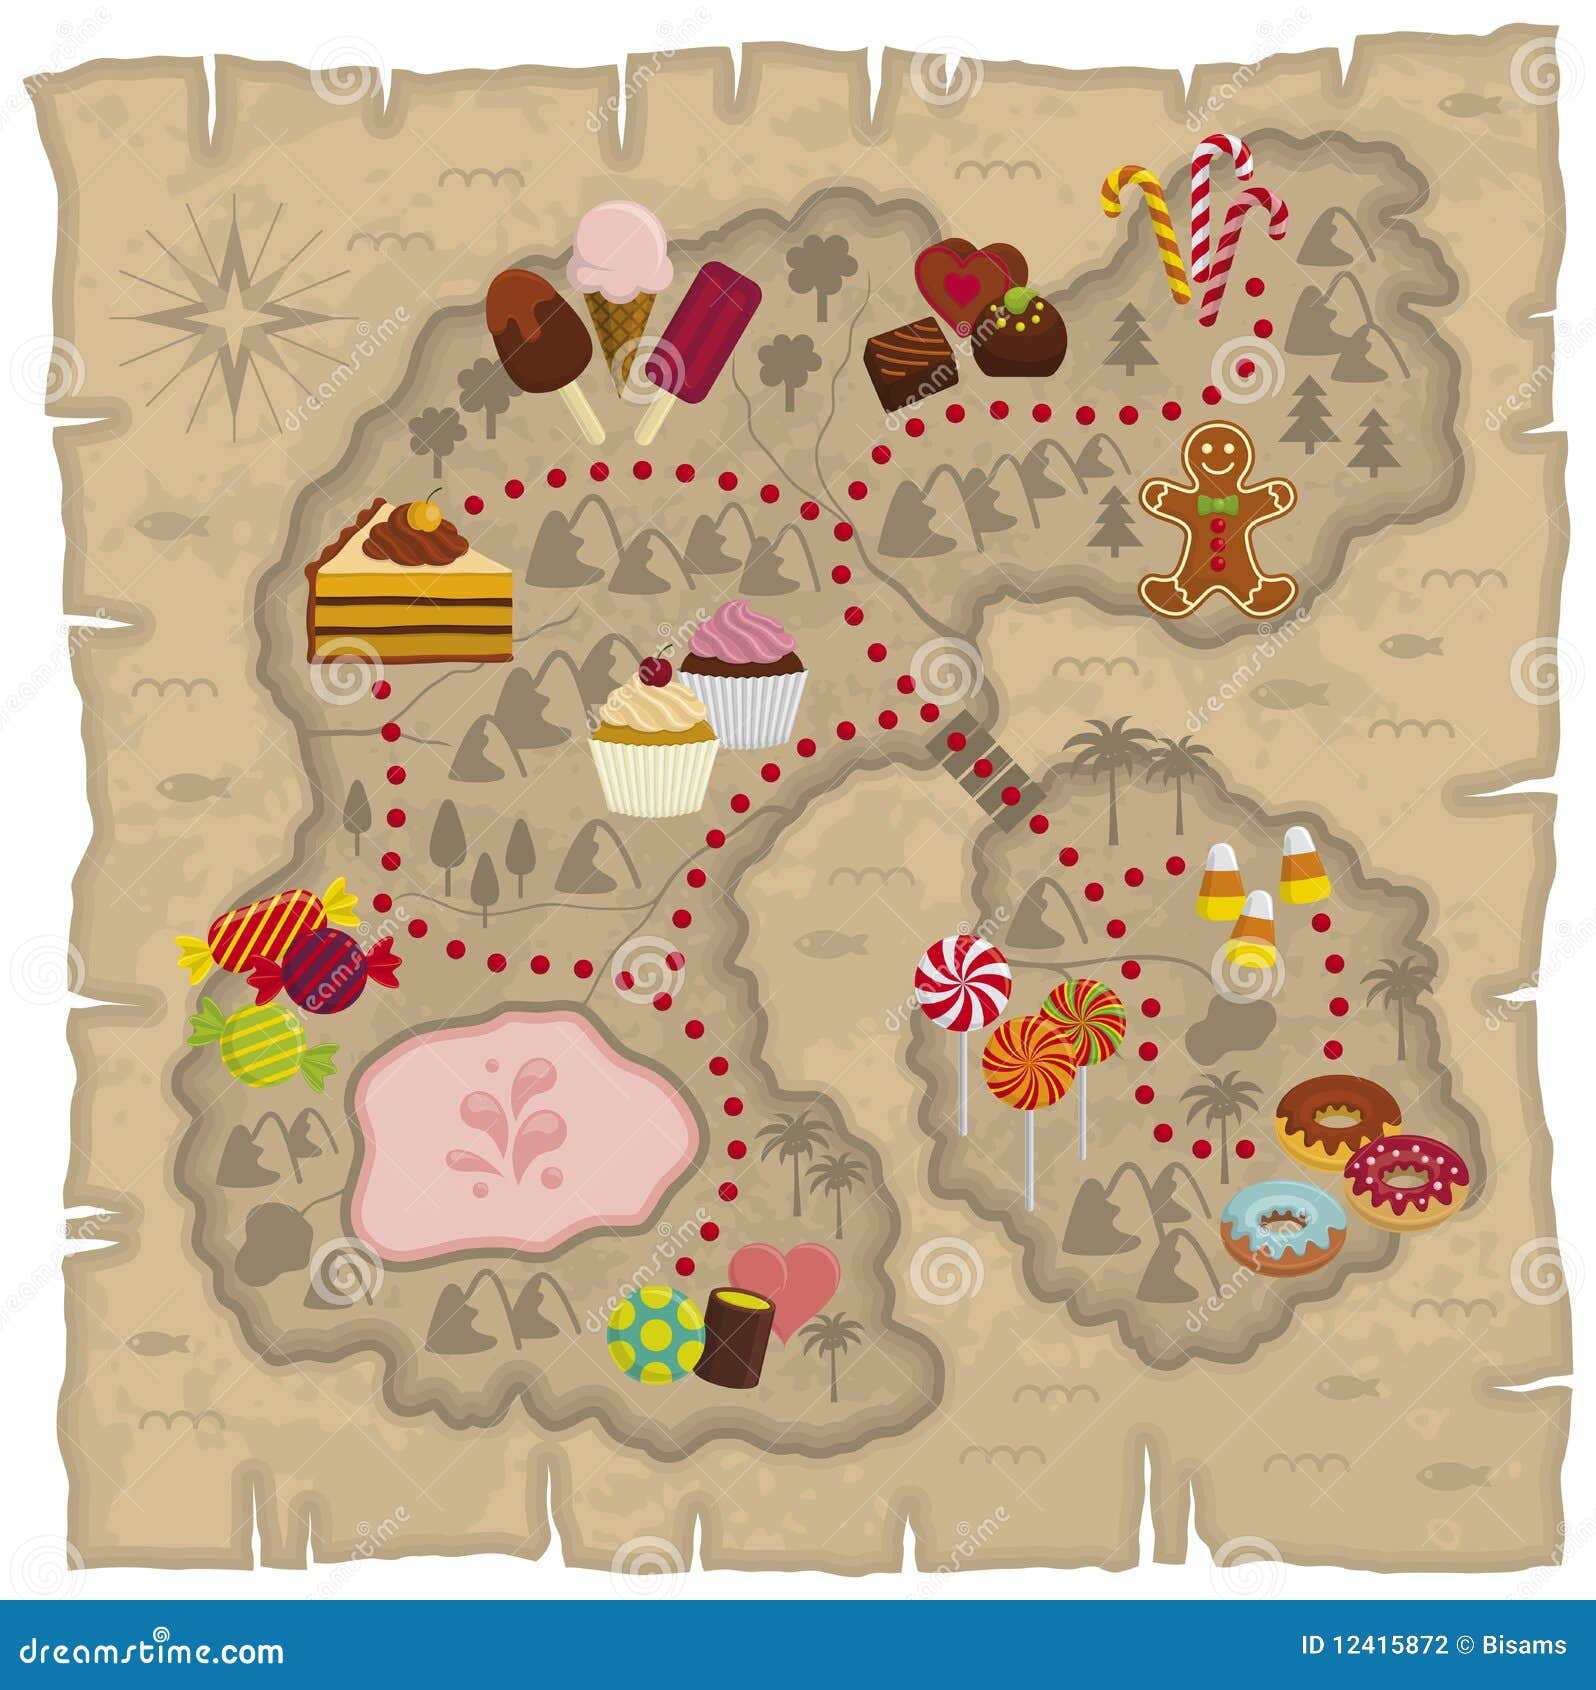 Карта сладость. Карта сладостей. Карта путешествия в волшебную страну. Карта конфетной страны. Карта сказочного царства для игры.